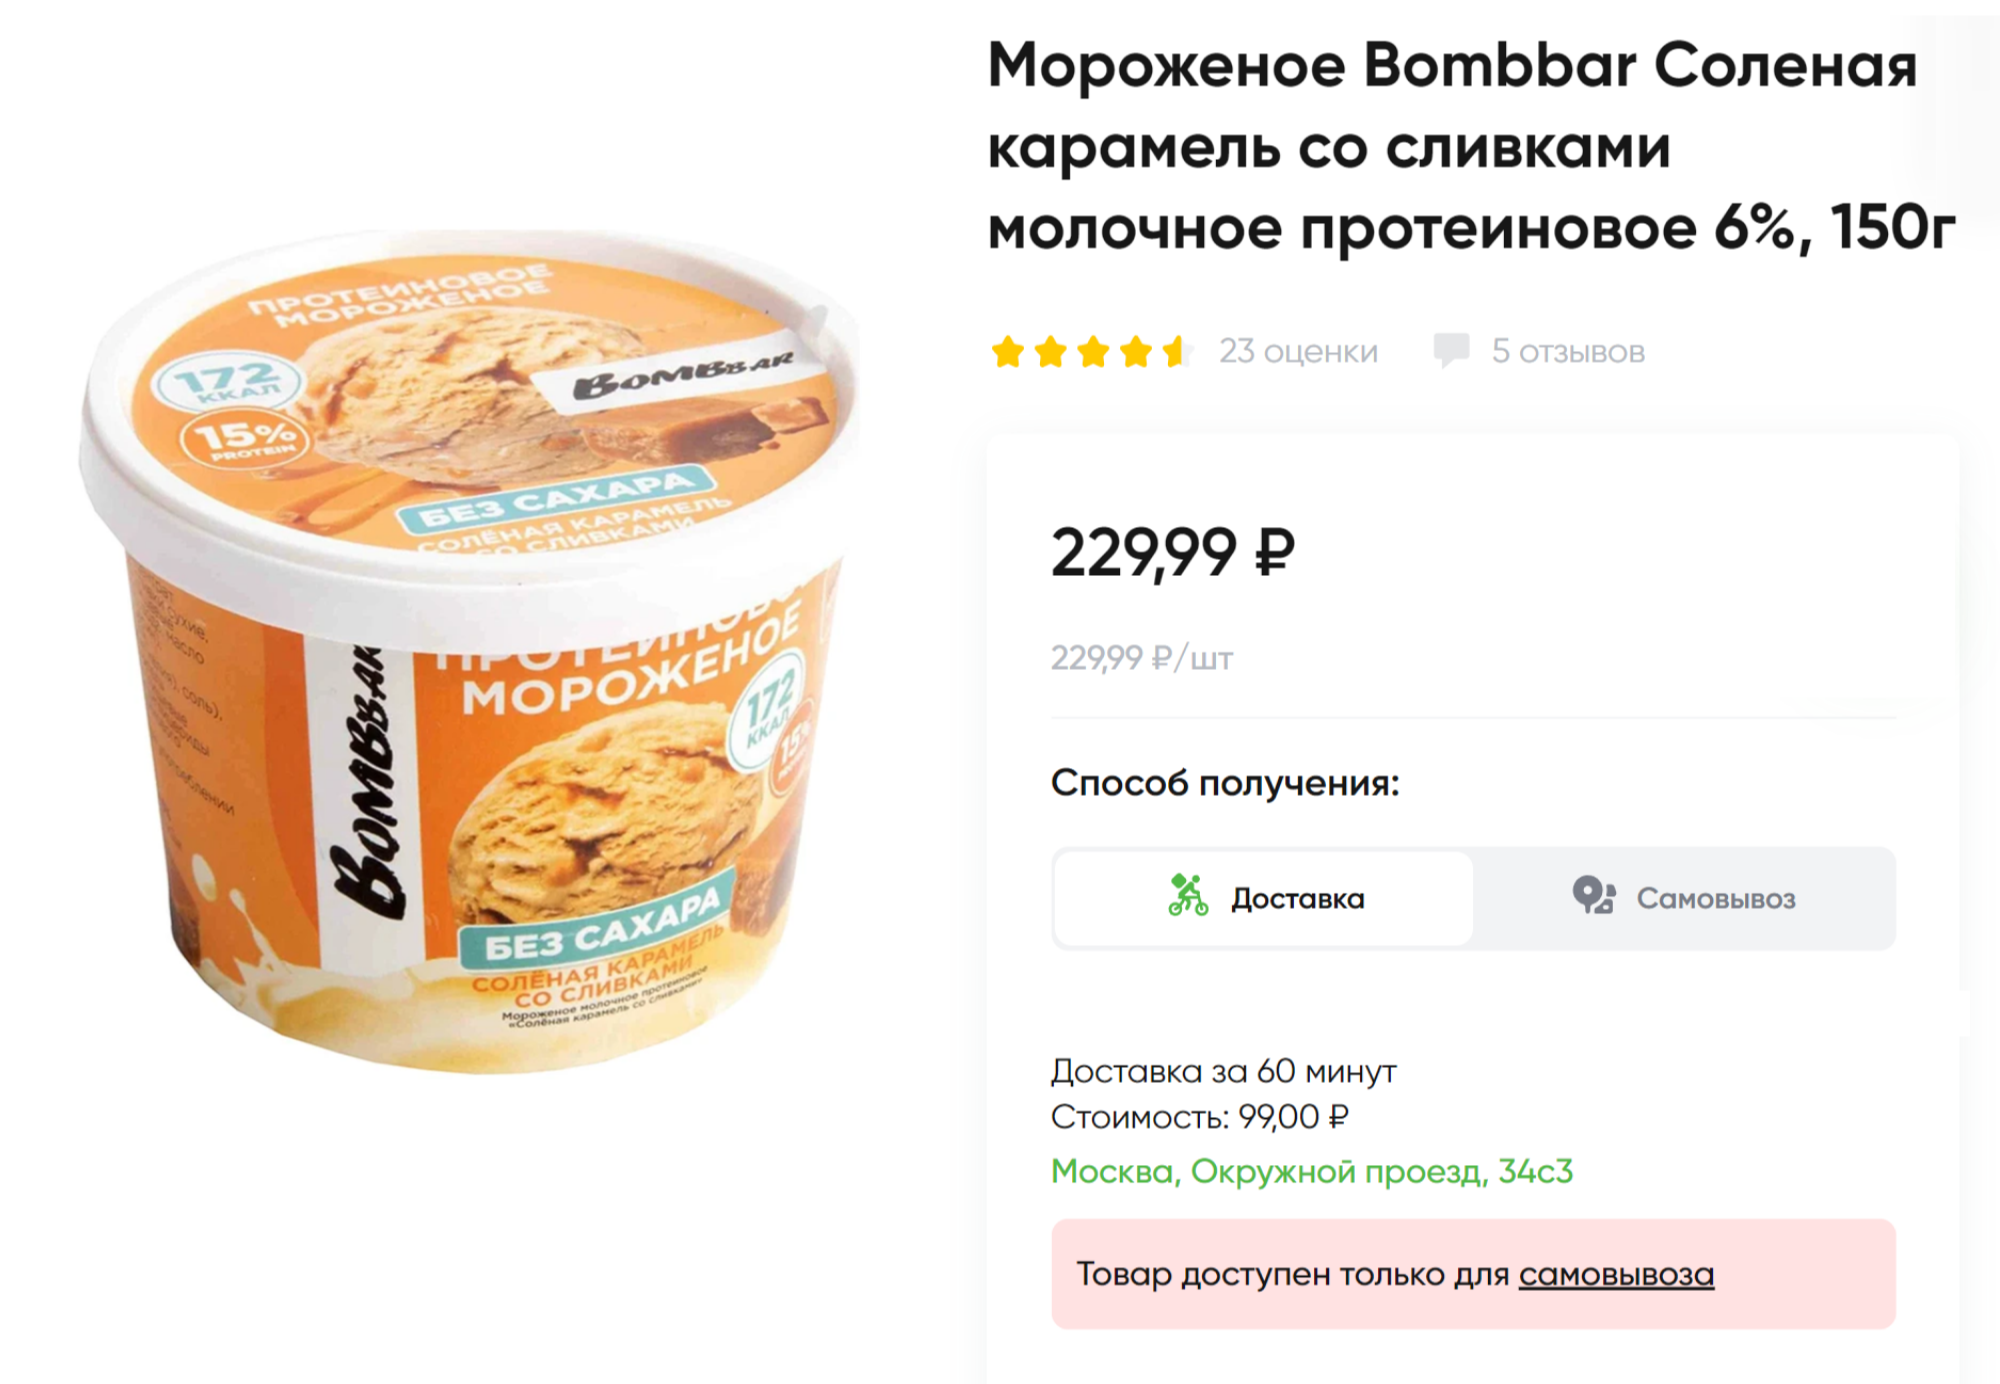 Разные варианты протеинового мороженого без сахара есть у марки Bombbar. Источник: perekrestok.ru